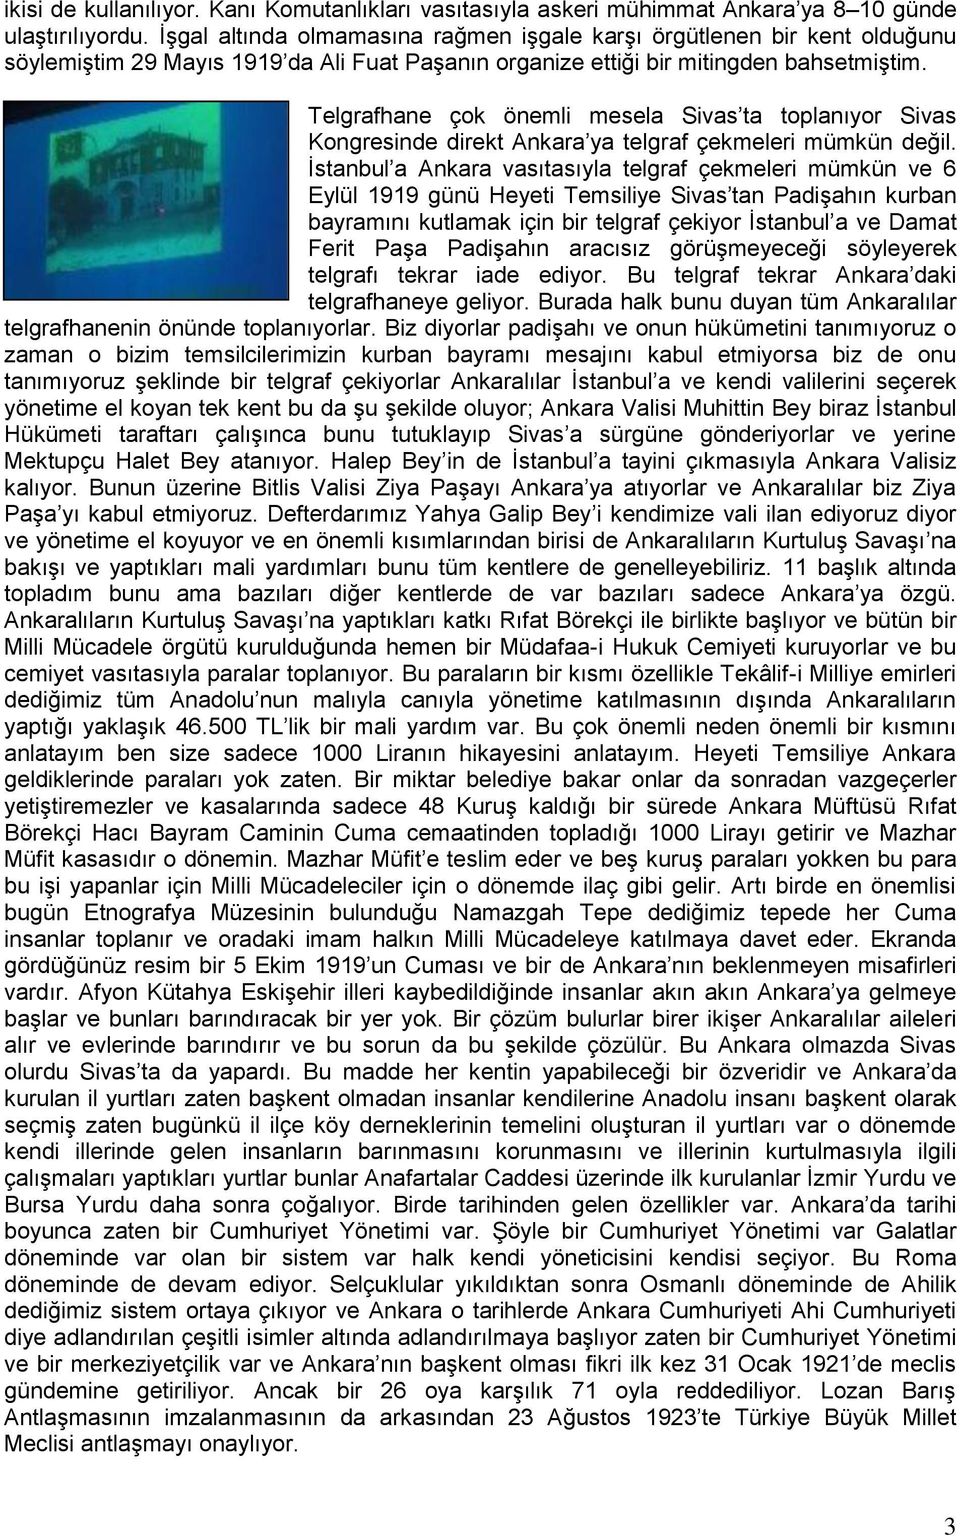 Telgrafhane çok önemli mesela Sivas ta toplanıyor Sivas Kongresinde direkt Ankara ya telgraf çekmeleri mümkün değil.